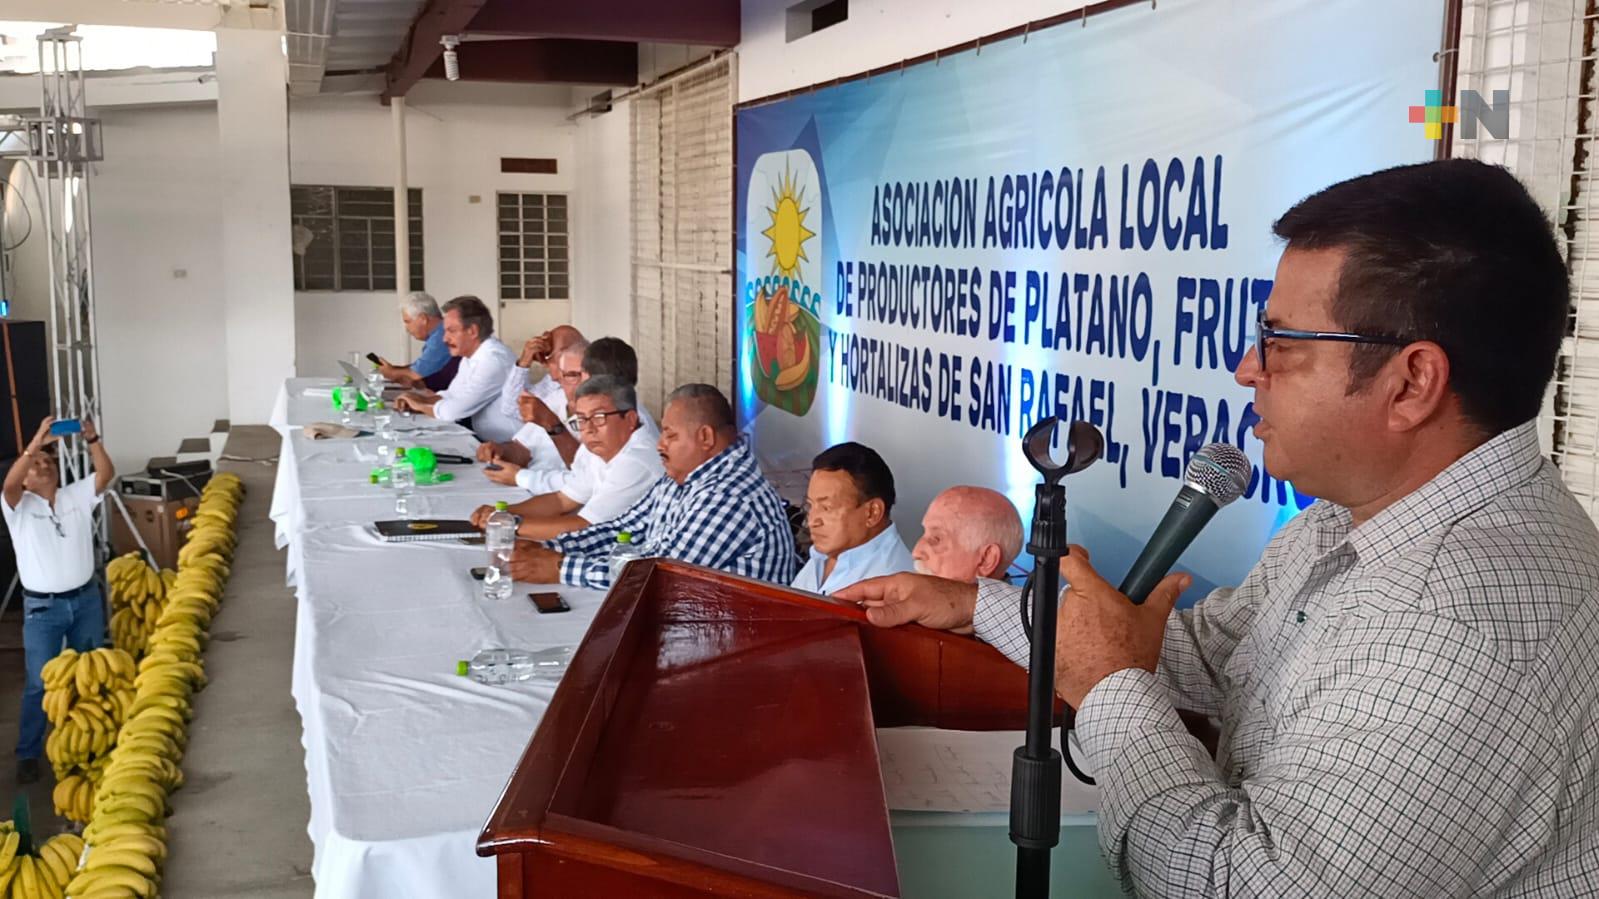 Luis Grappin Pumarino continúa al frente de la Asociación Agrícola Local de Productores de Plátano Frutas y Hortalizas de San Rafael